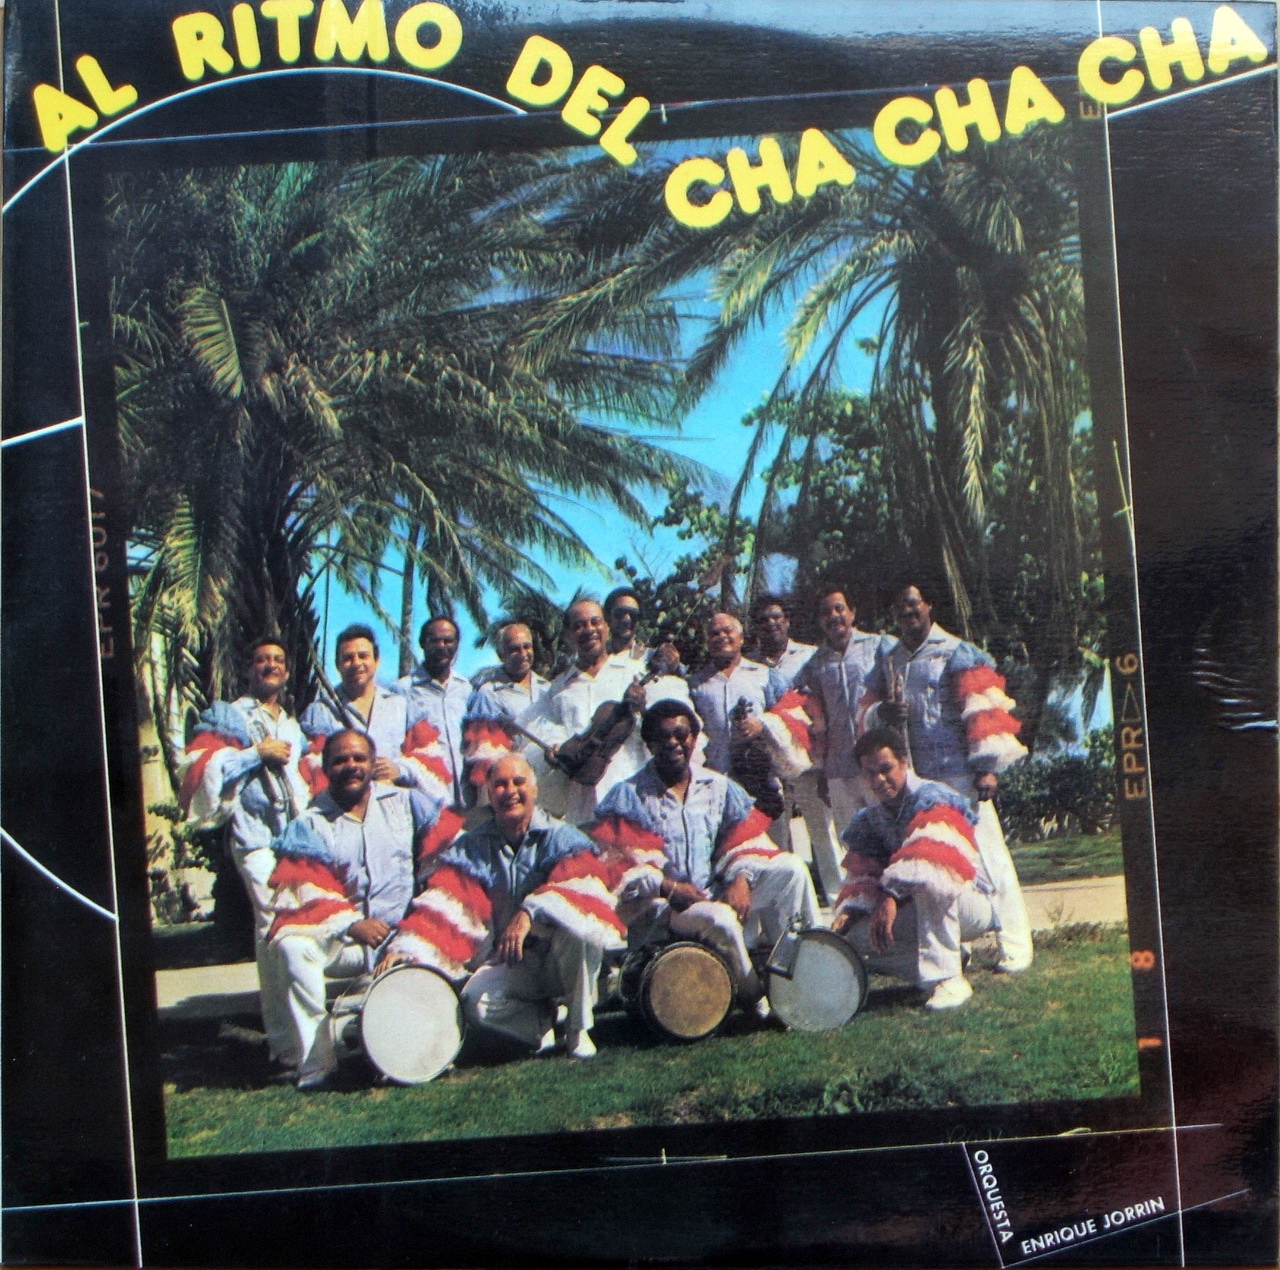 enrique jorrin - al ritmo del cha cha cha (1975) 102-35136